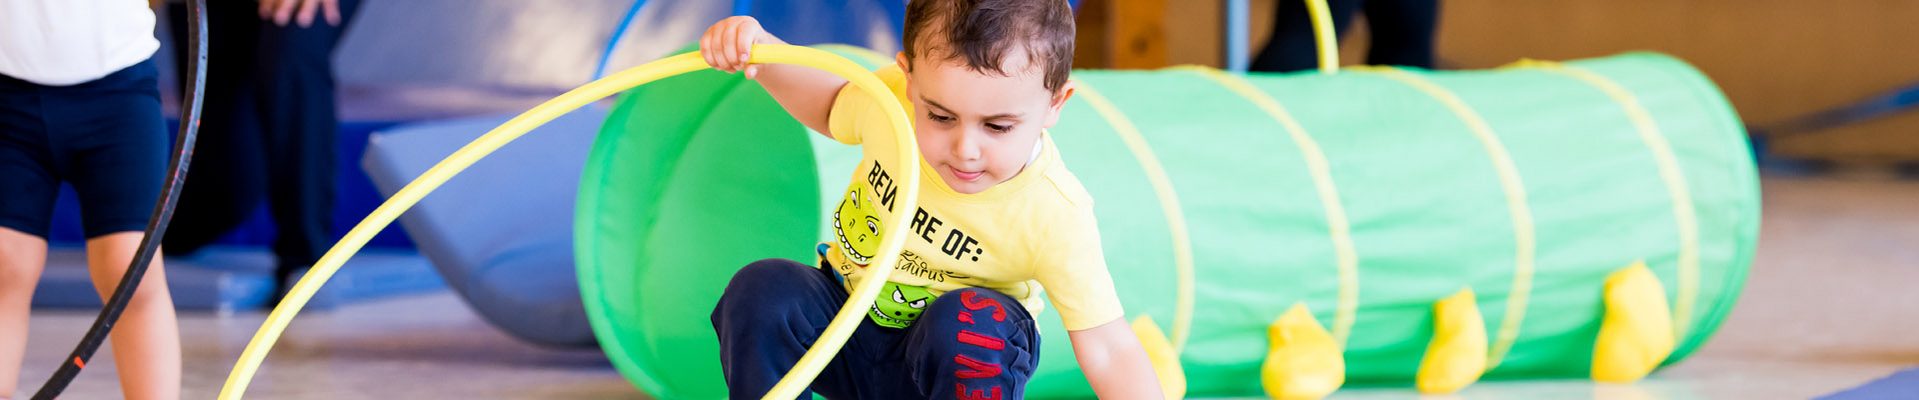 Teaser Kindertagespflege: Kind spielt mit Hula Hoop Reif